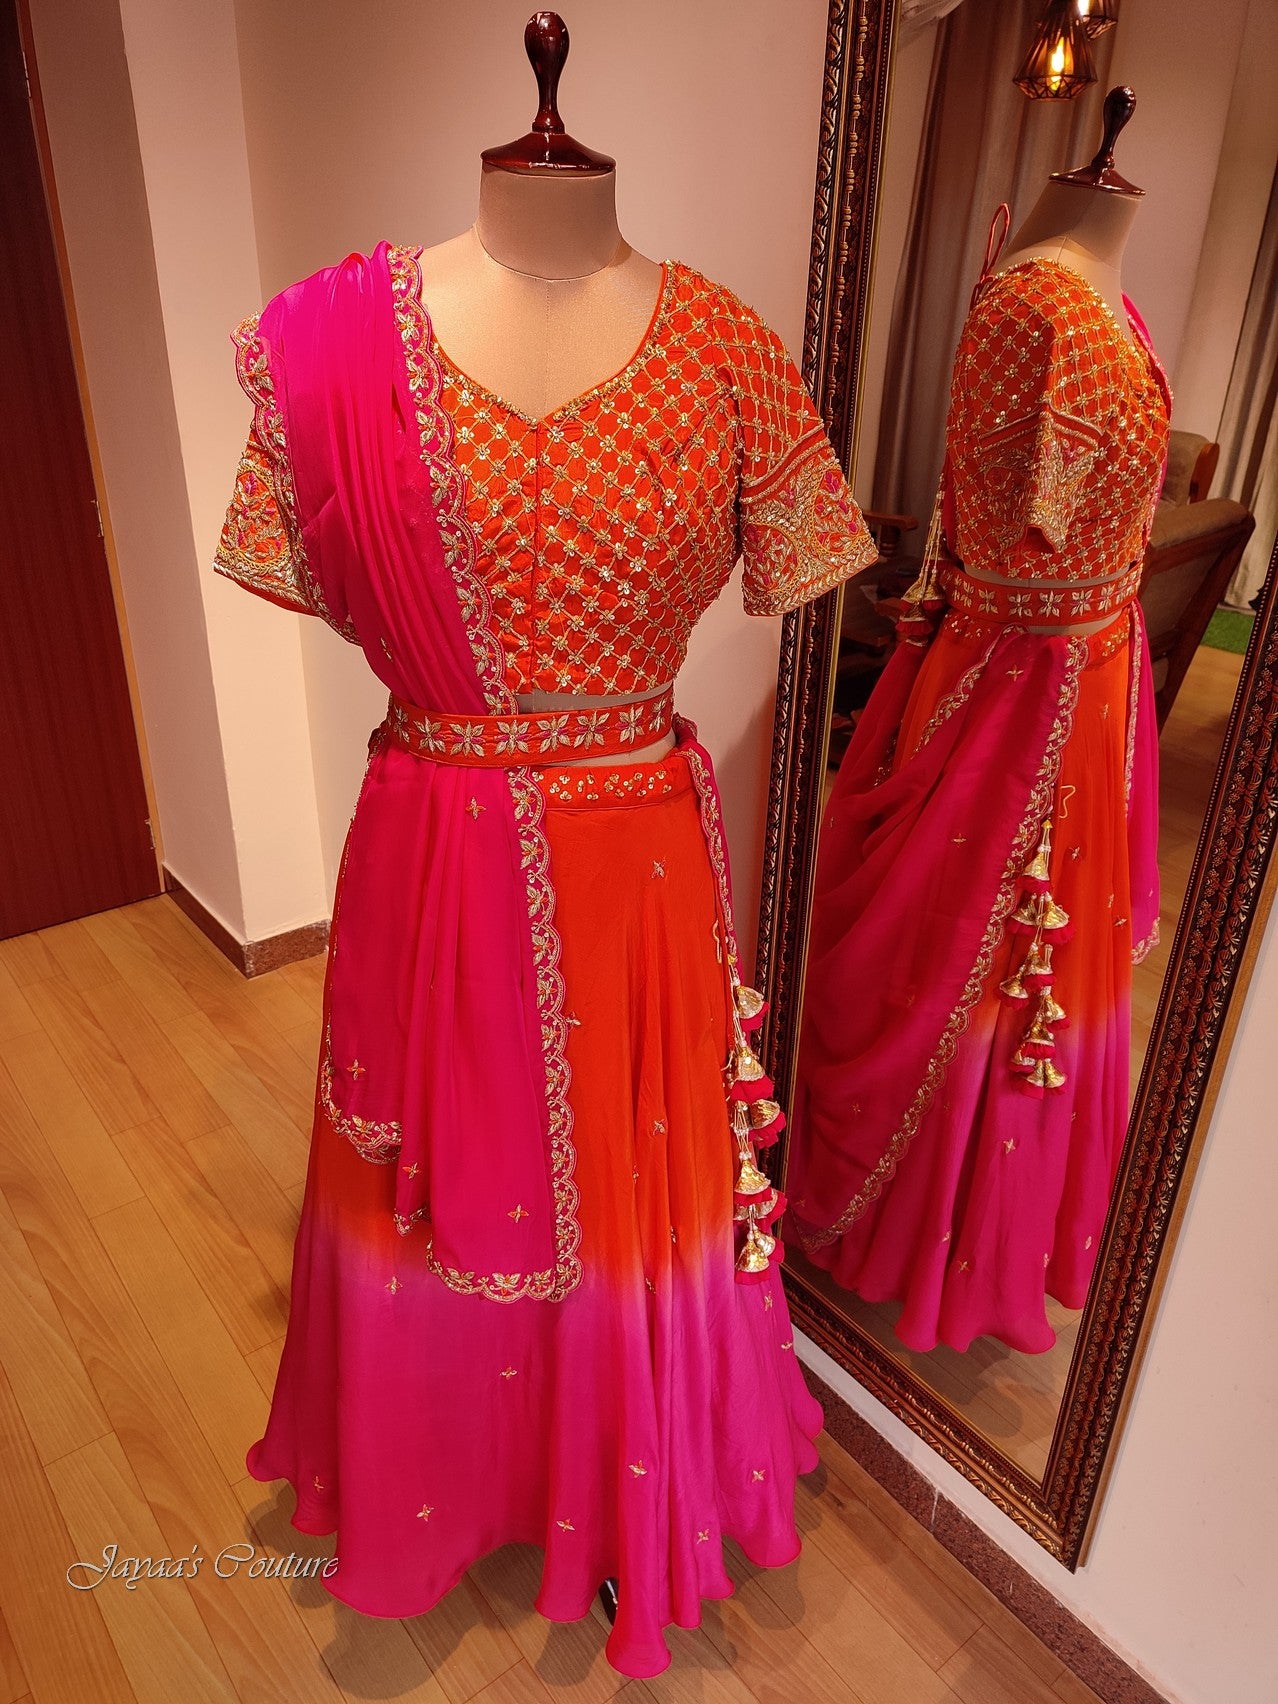 Pink Orange shaded Lehenga set with dupatta and belt